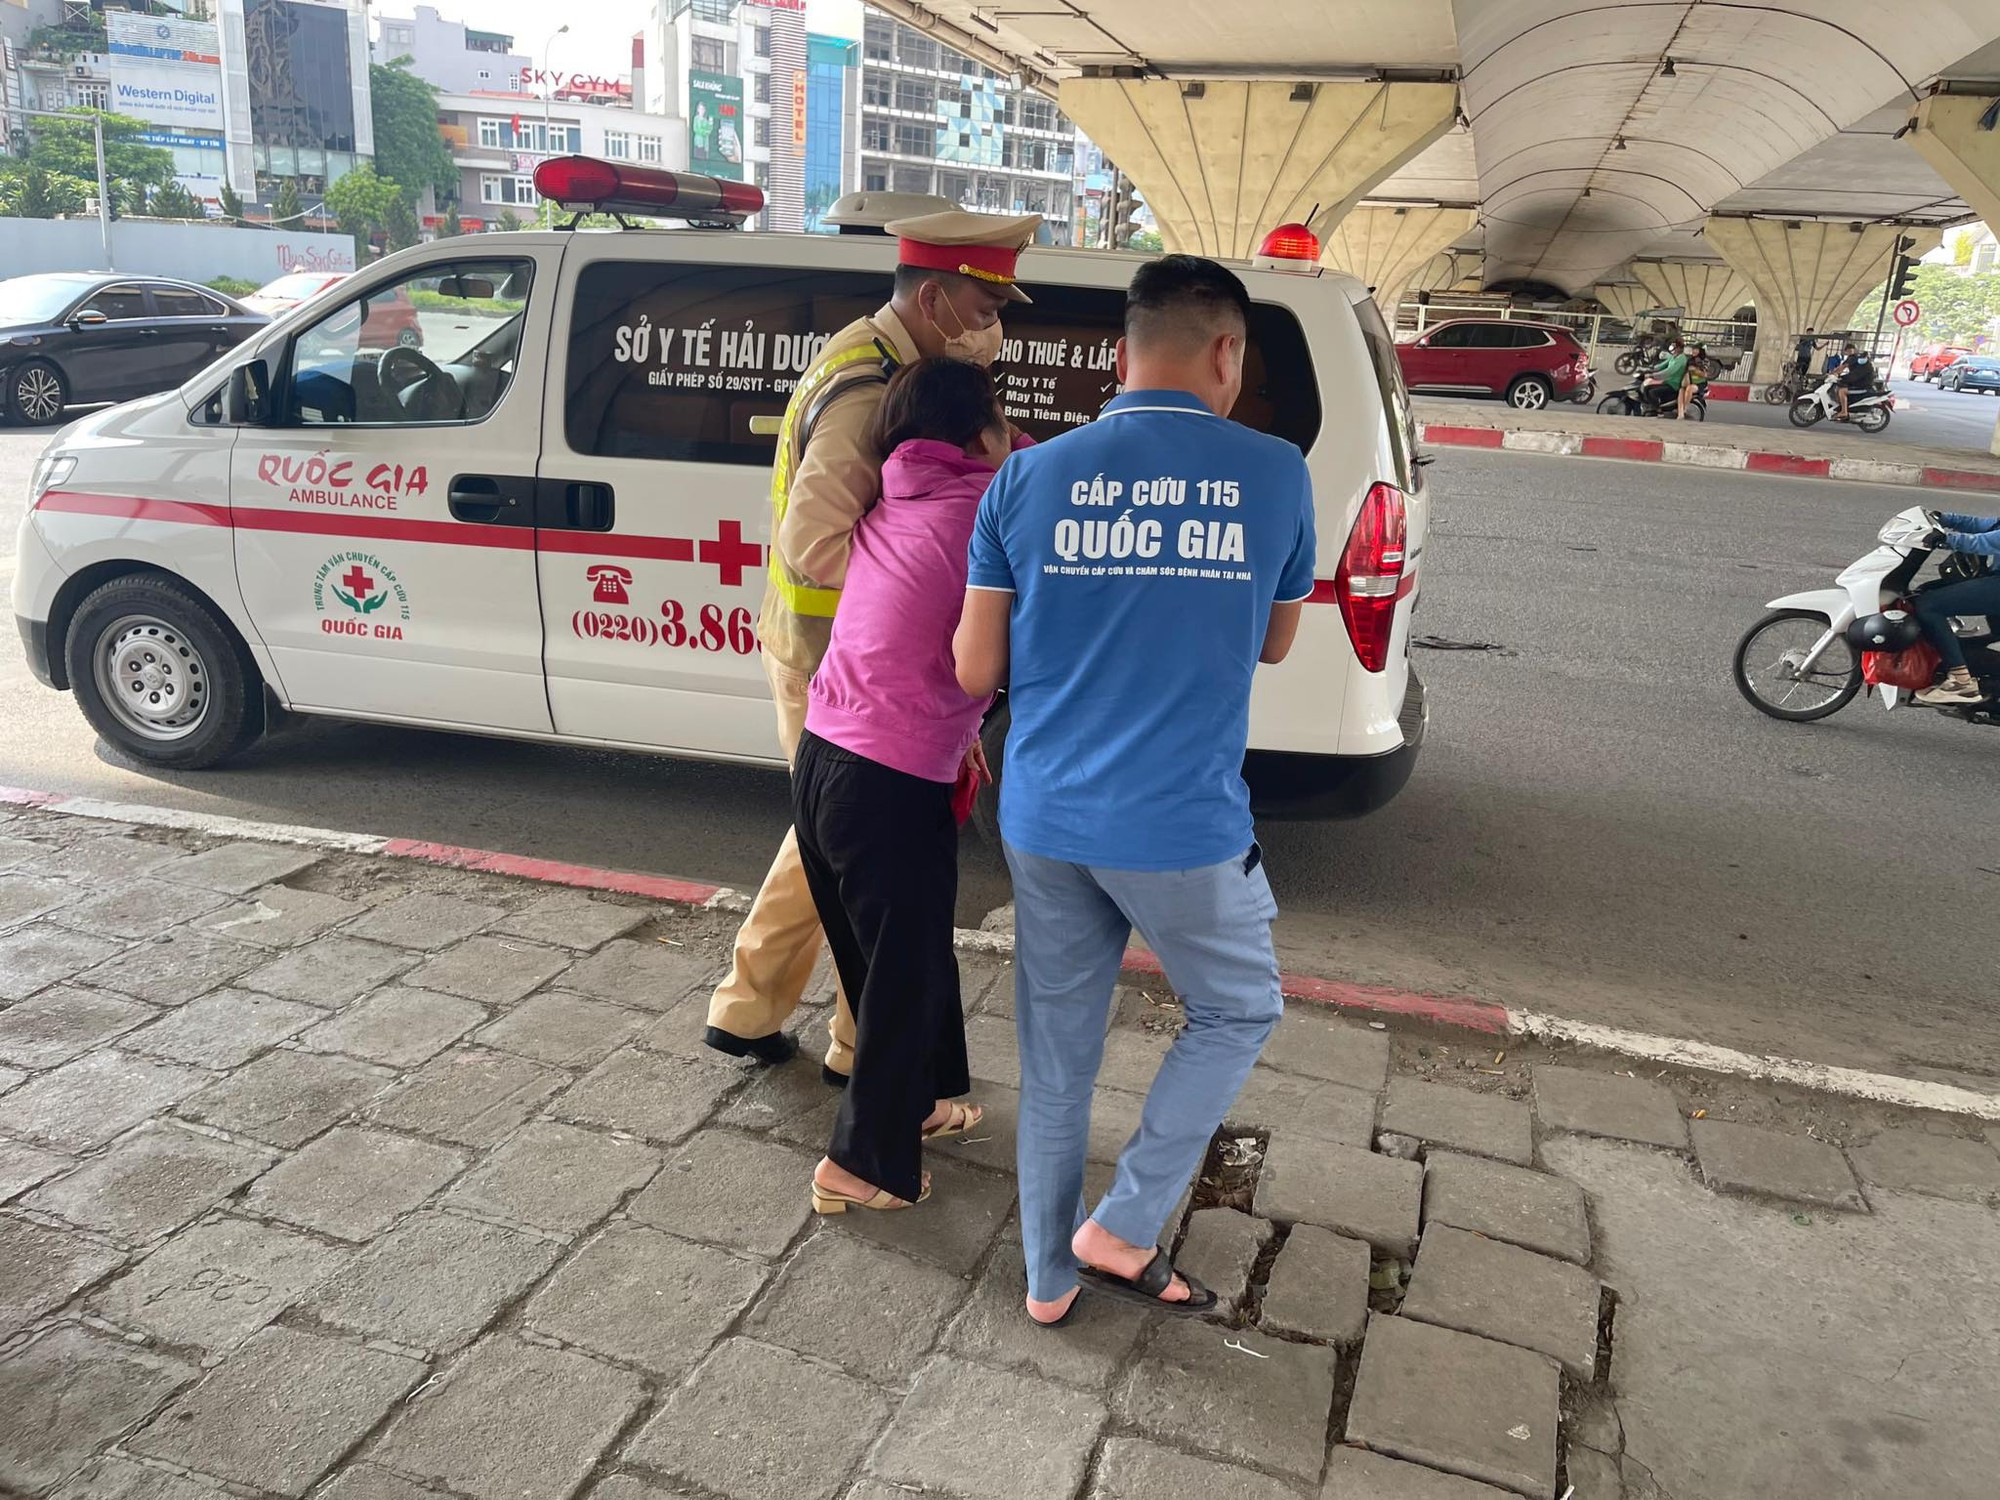 Hà Nội: Chiến sĩ CSGT kịp thời sơ cứu 1 phụ nữ bị say nắng bị ngất ngoài đường - Ảnh 1.